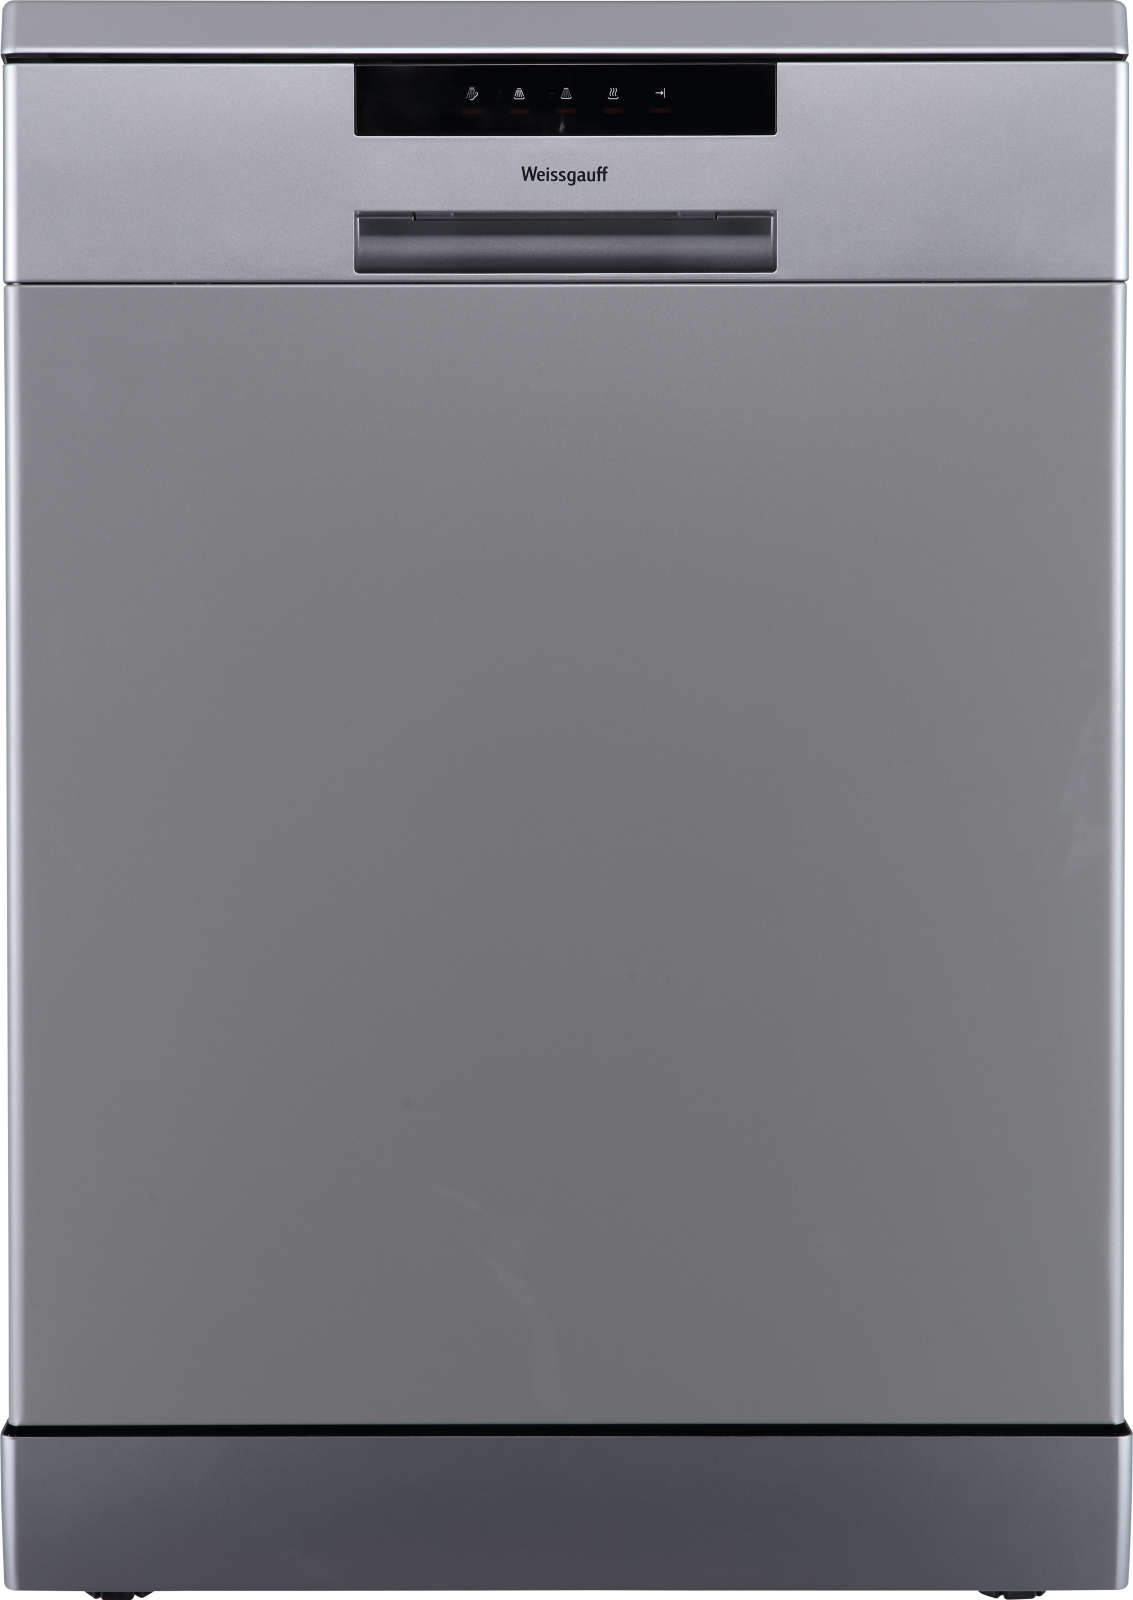 Посудомоечная машина Weissgauff DW 6013 Inox серебристый